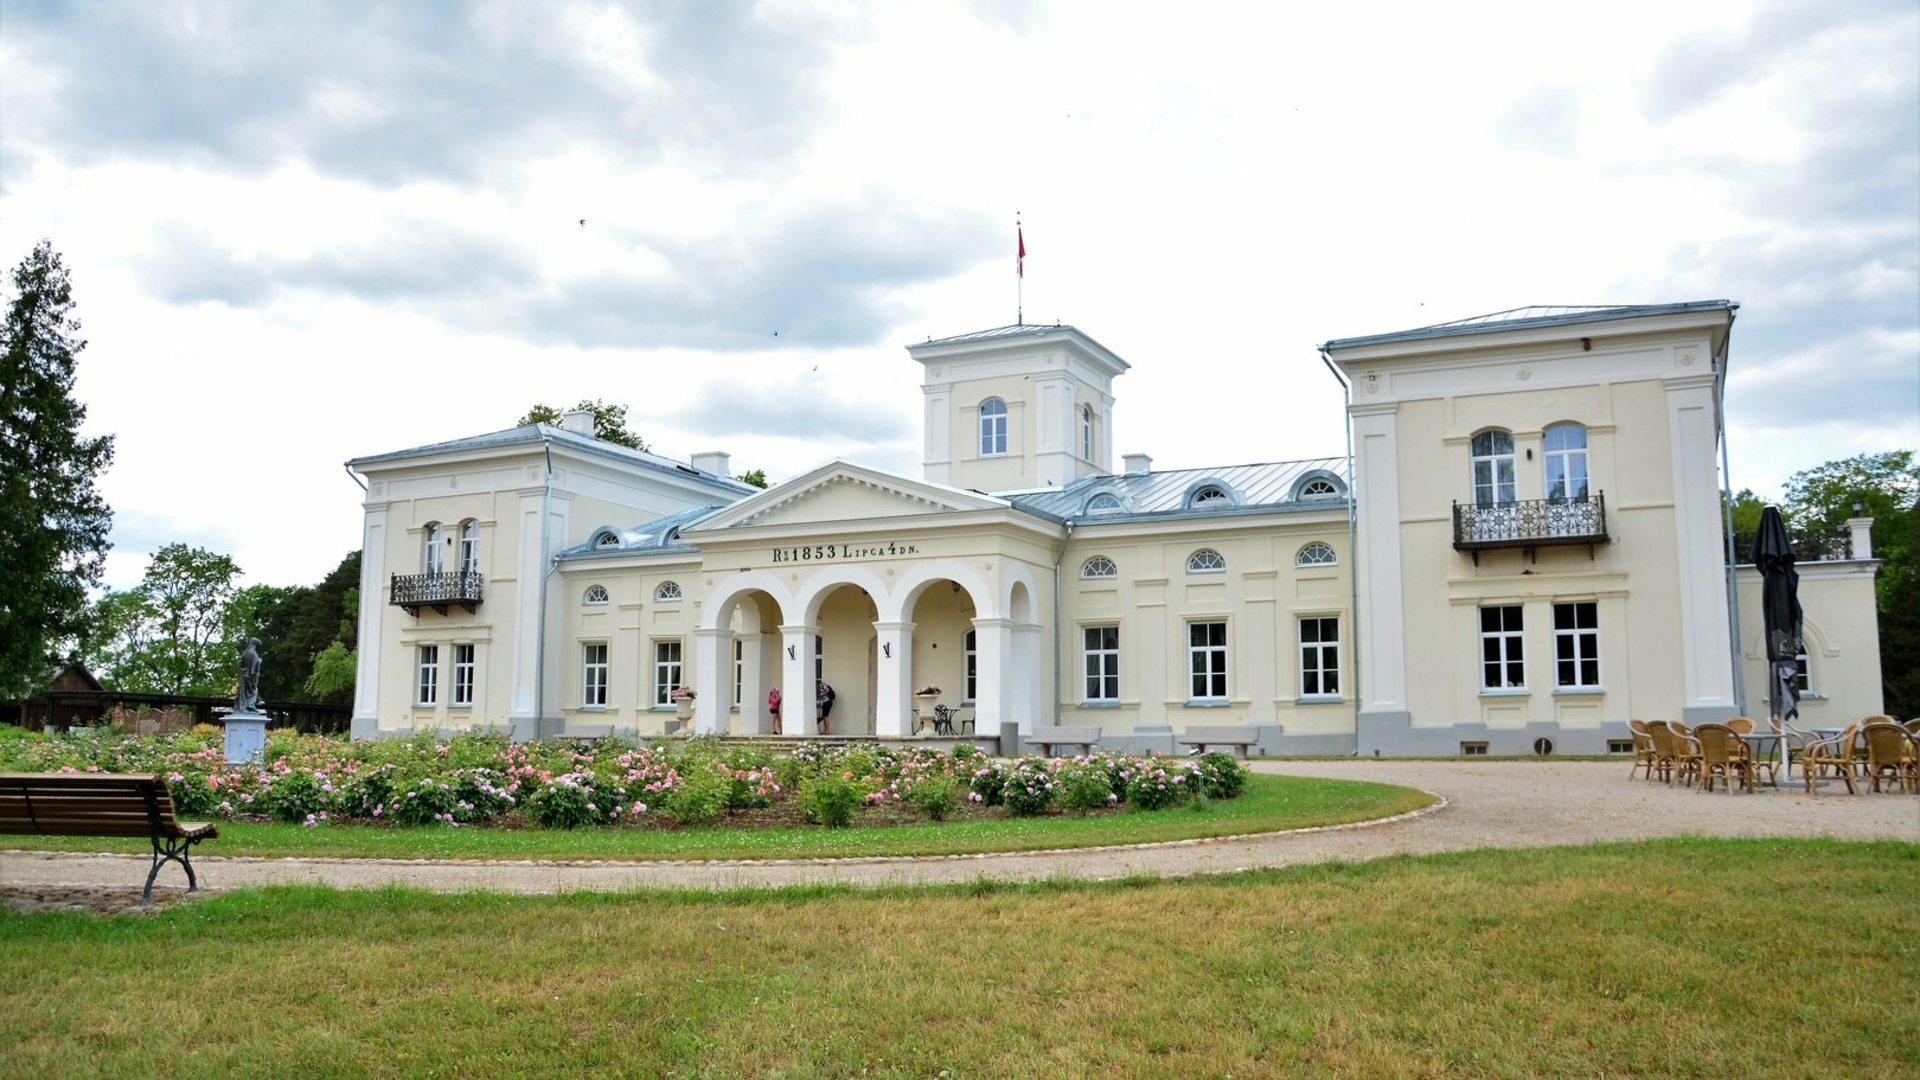 Burbiškis manor